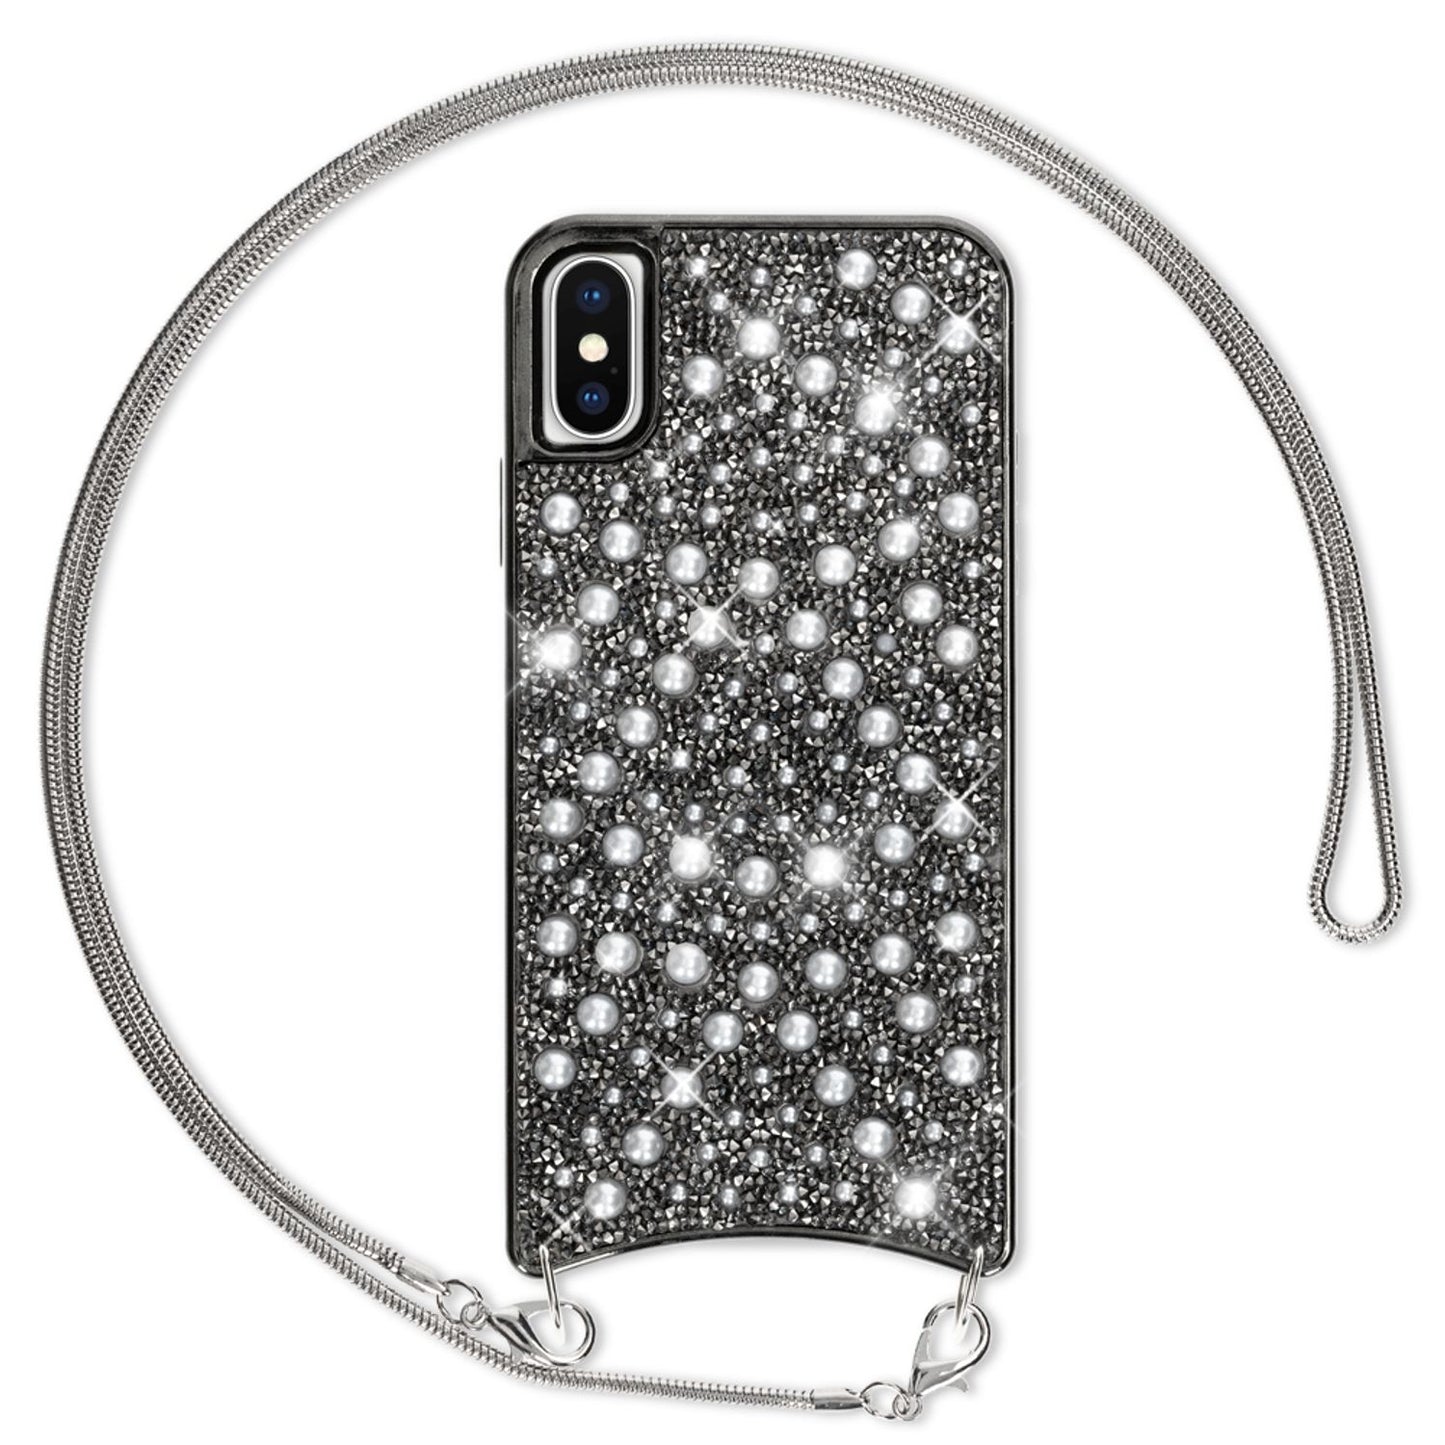 NALIA Glitzer Handyhülle mit Kette für iPhone XS Max, Necklace Pailletten Cover Case